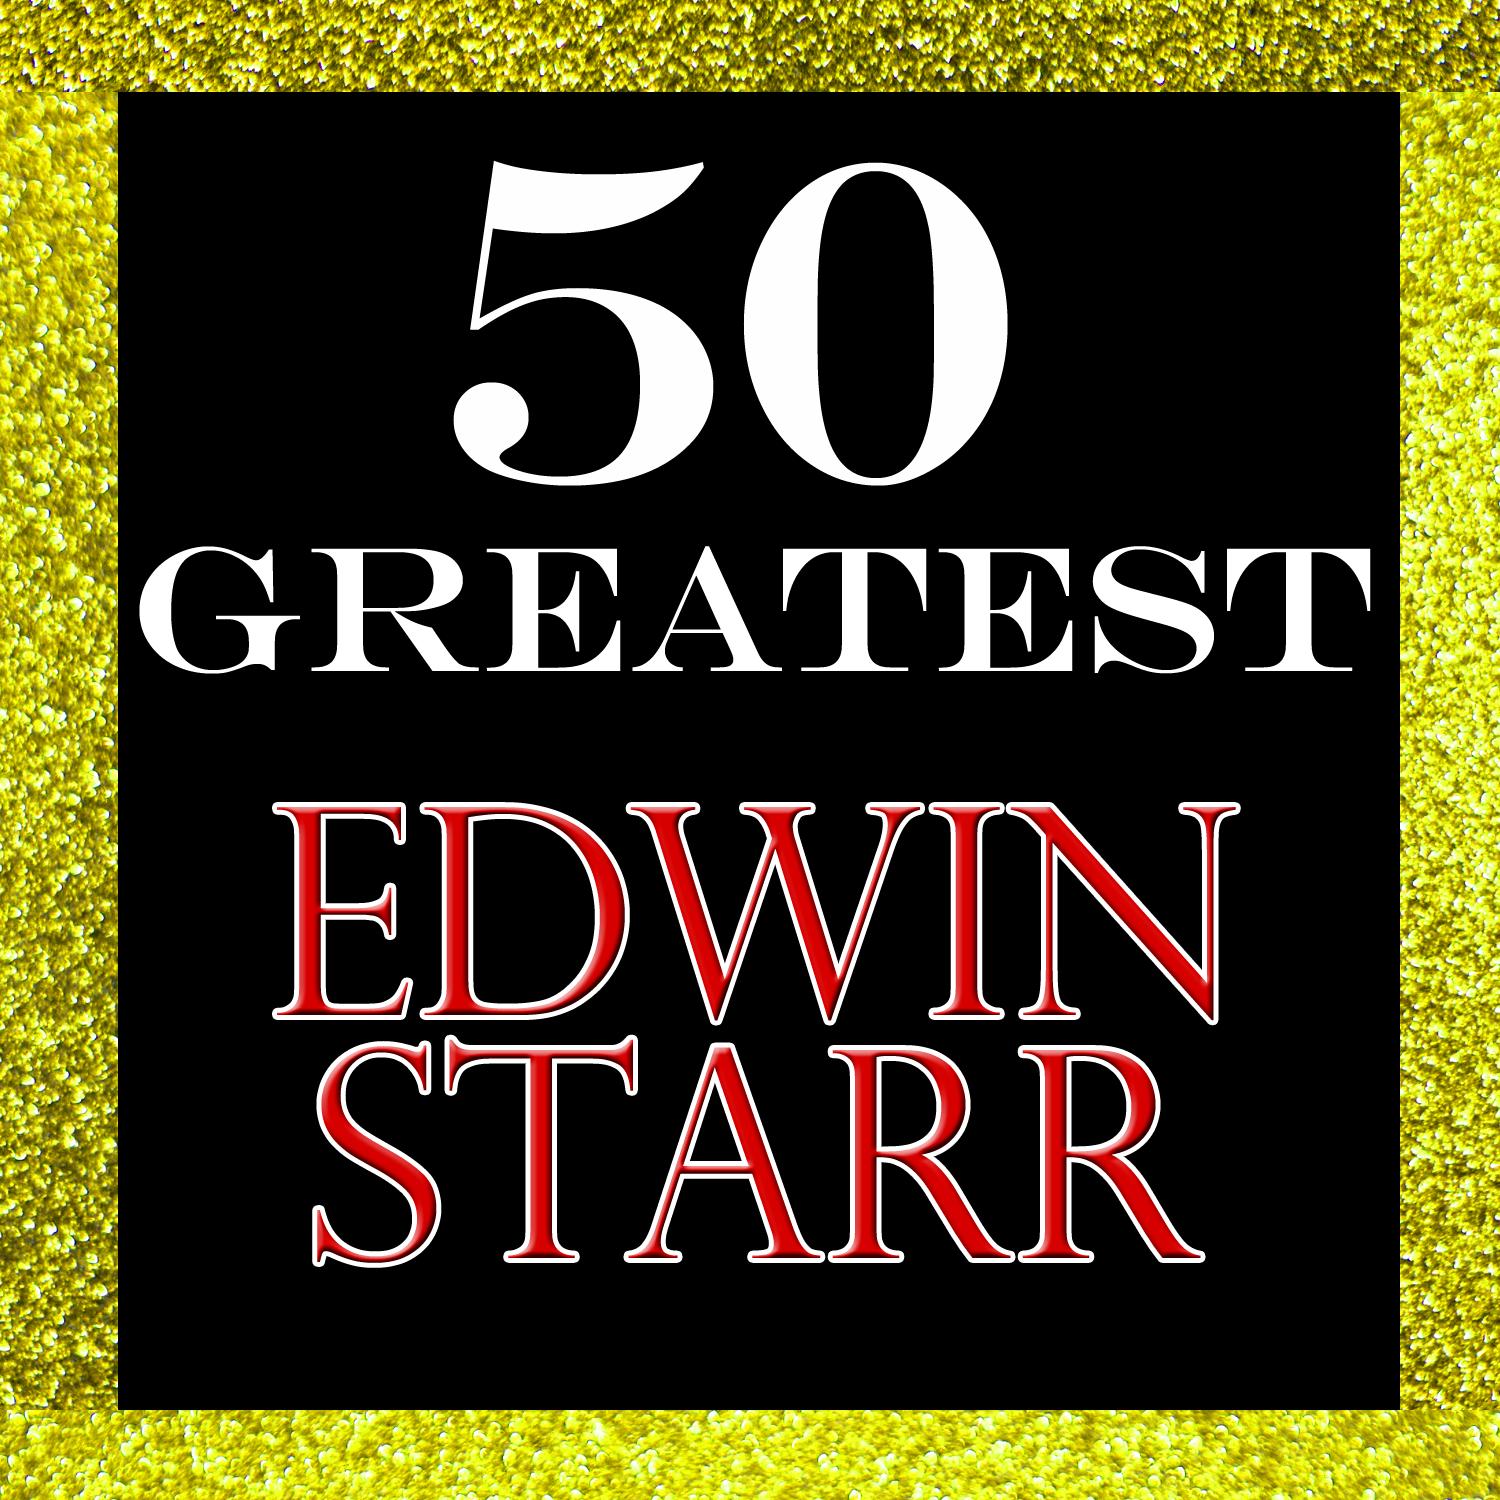 50 Greatest: Edwin Starr